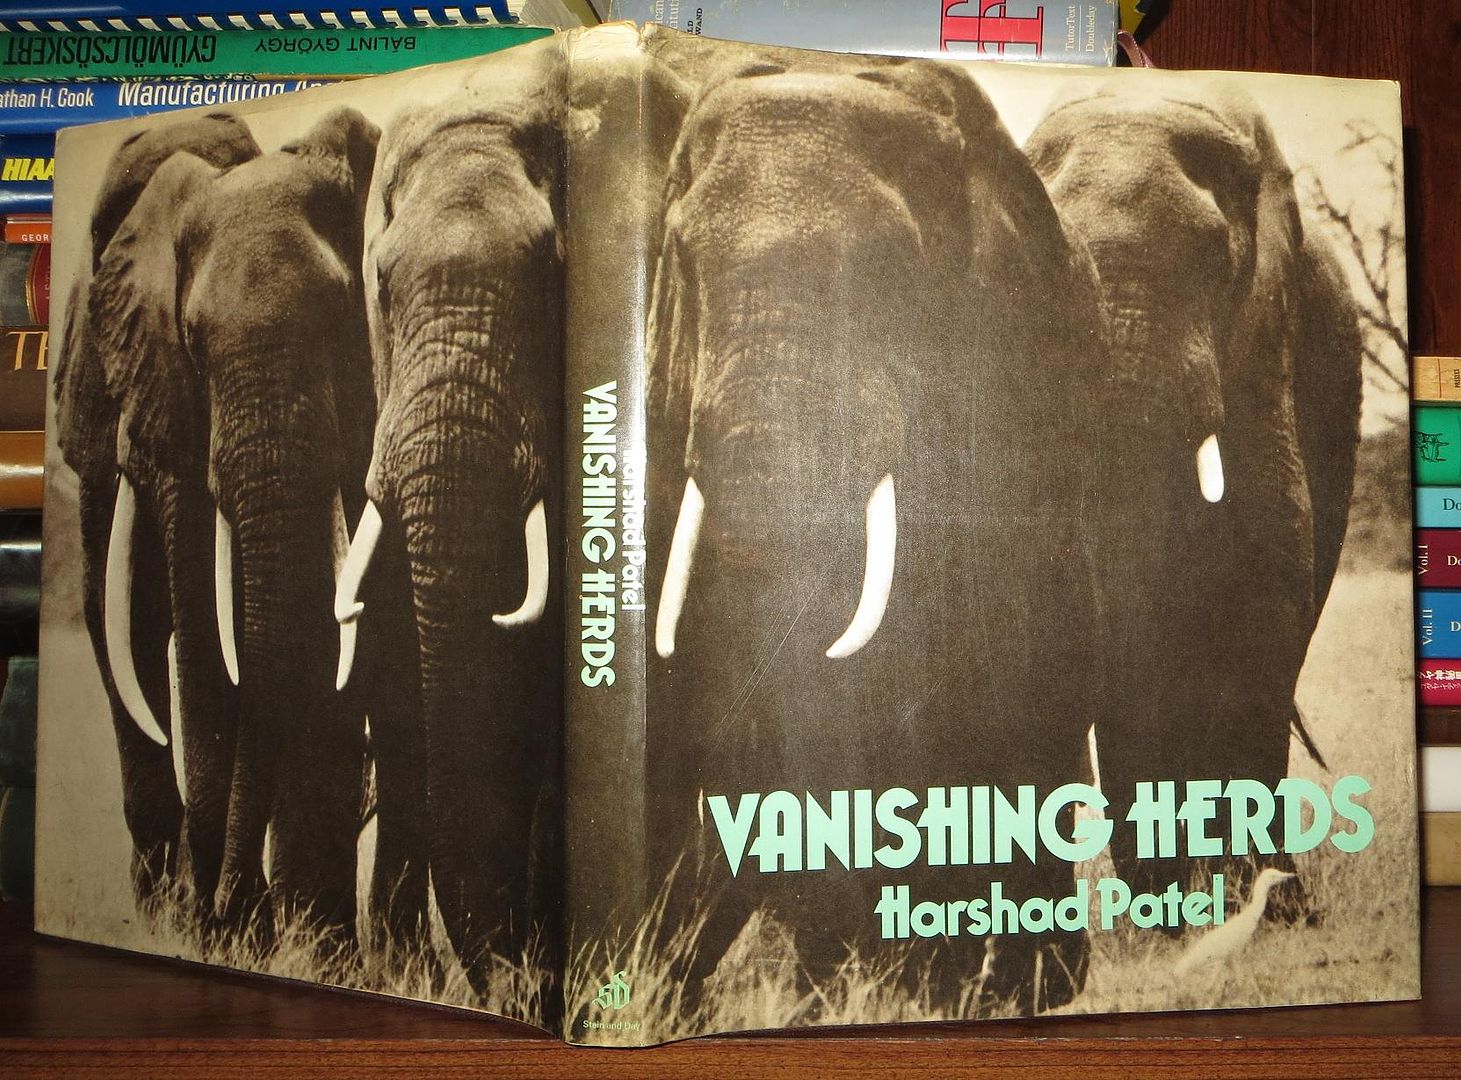 PATEL, HARSHAD C. - Vanishing Herds